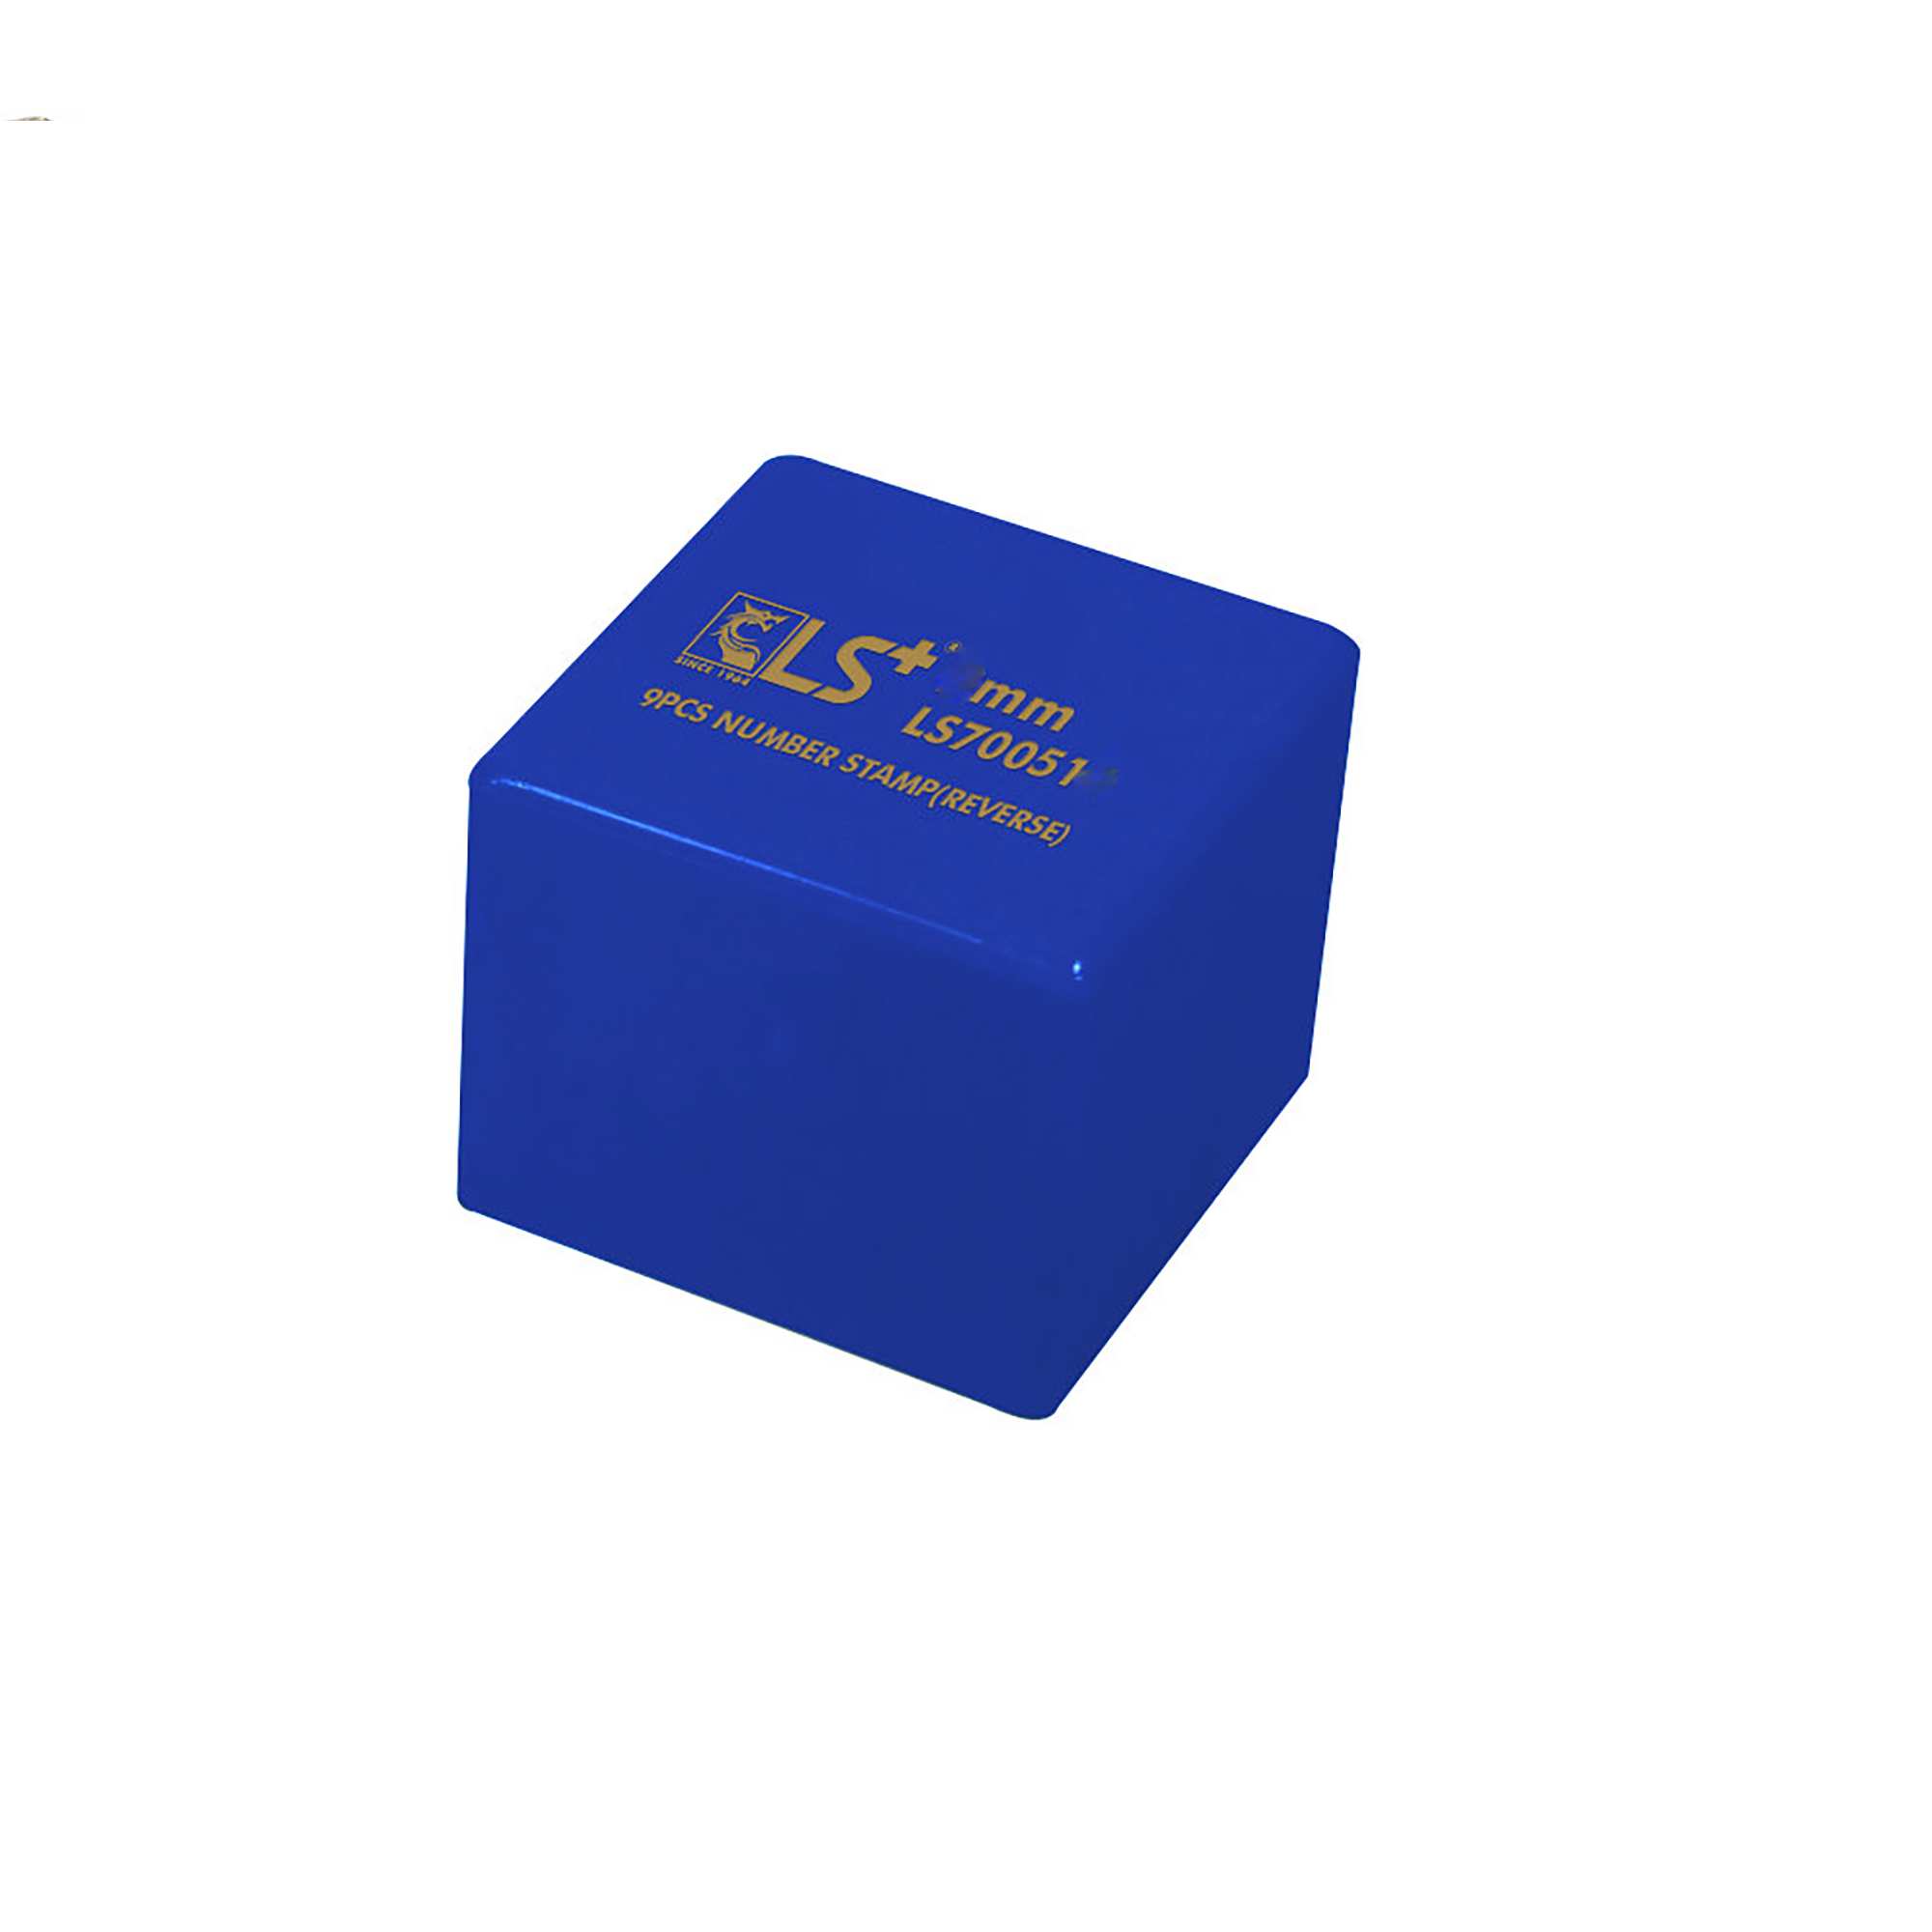 Hình ảnh 5 của mặt hàng Đóng Số Bộ 9pcs Ngược 5mm LS - hộp xanh